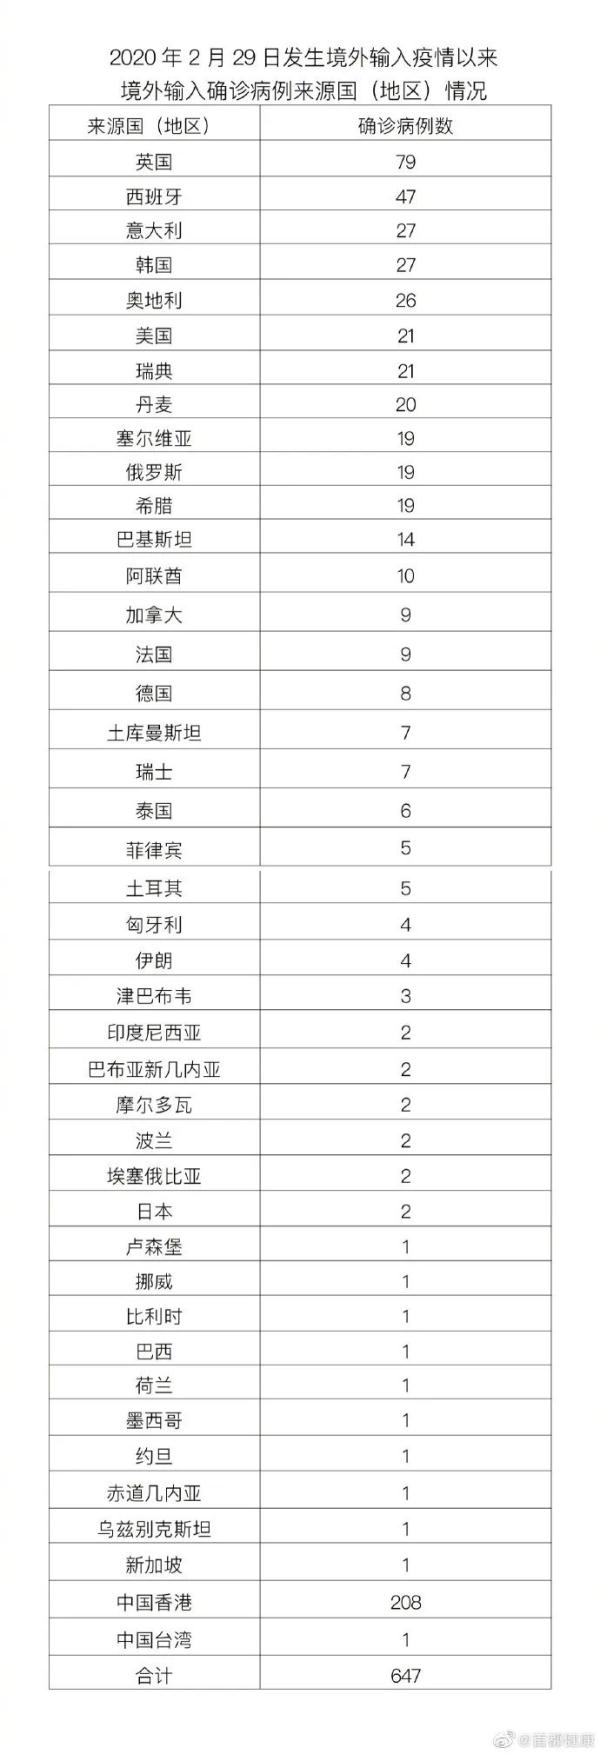 北京昨日新增4例本土确诊病例，东城区3例，朝阳区1例